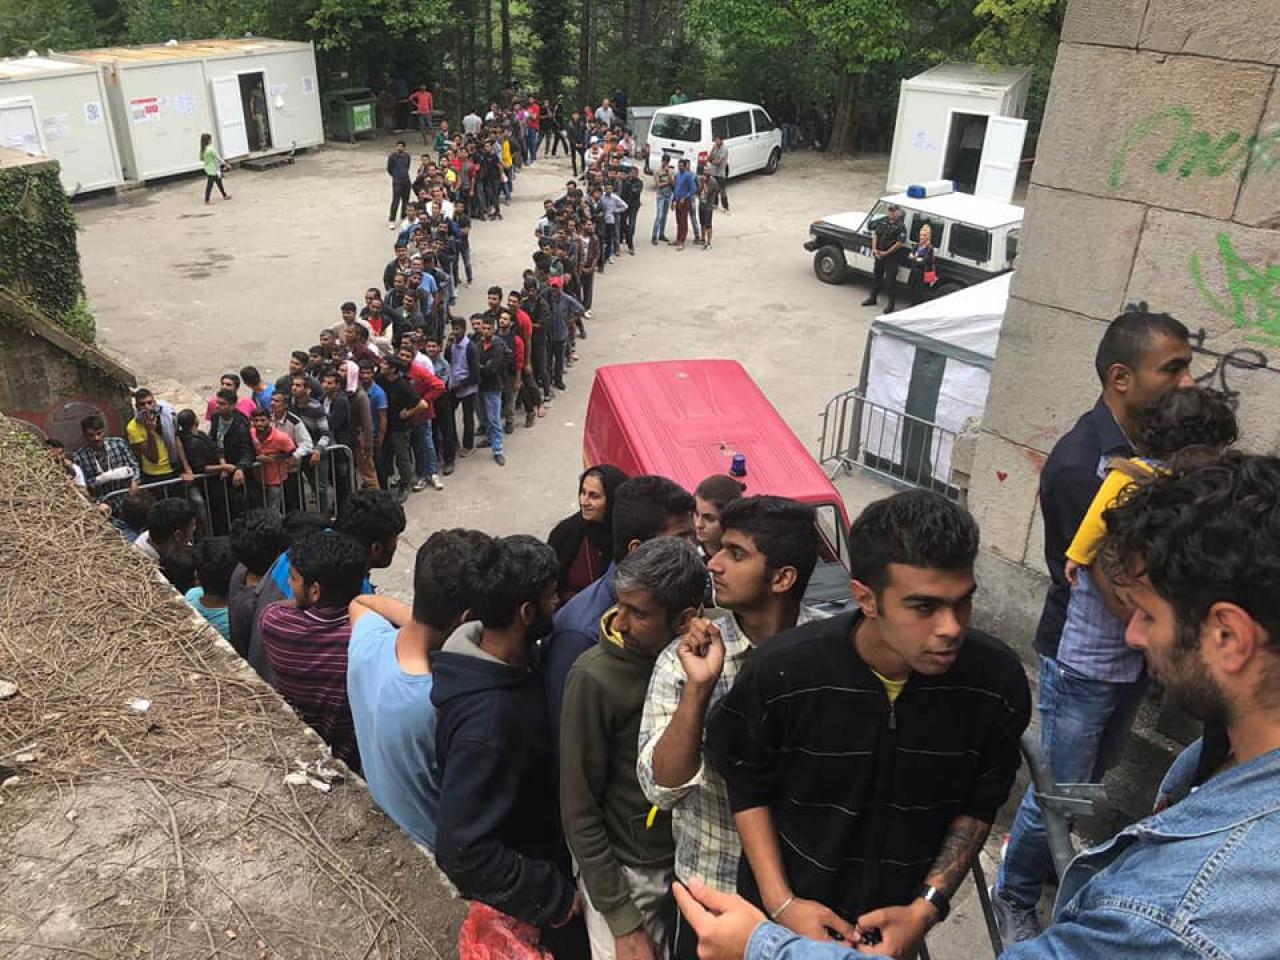 Migranti se vraćaju u Sarajevo? / Bljesak.info | BH Internet magazin